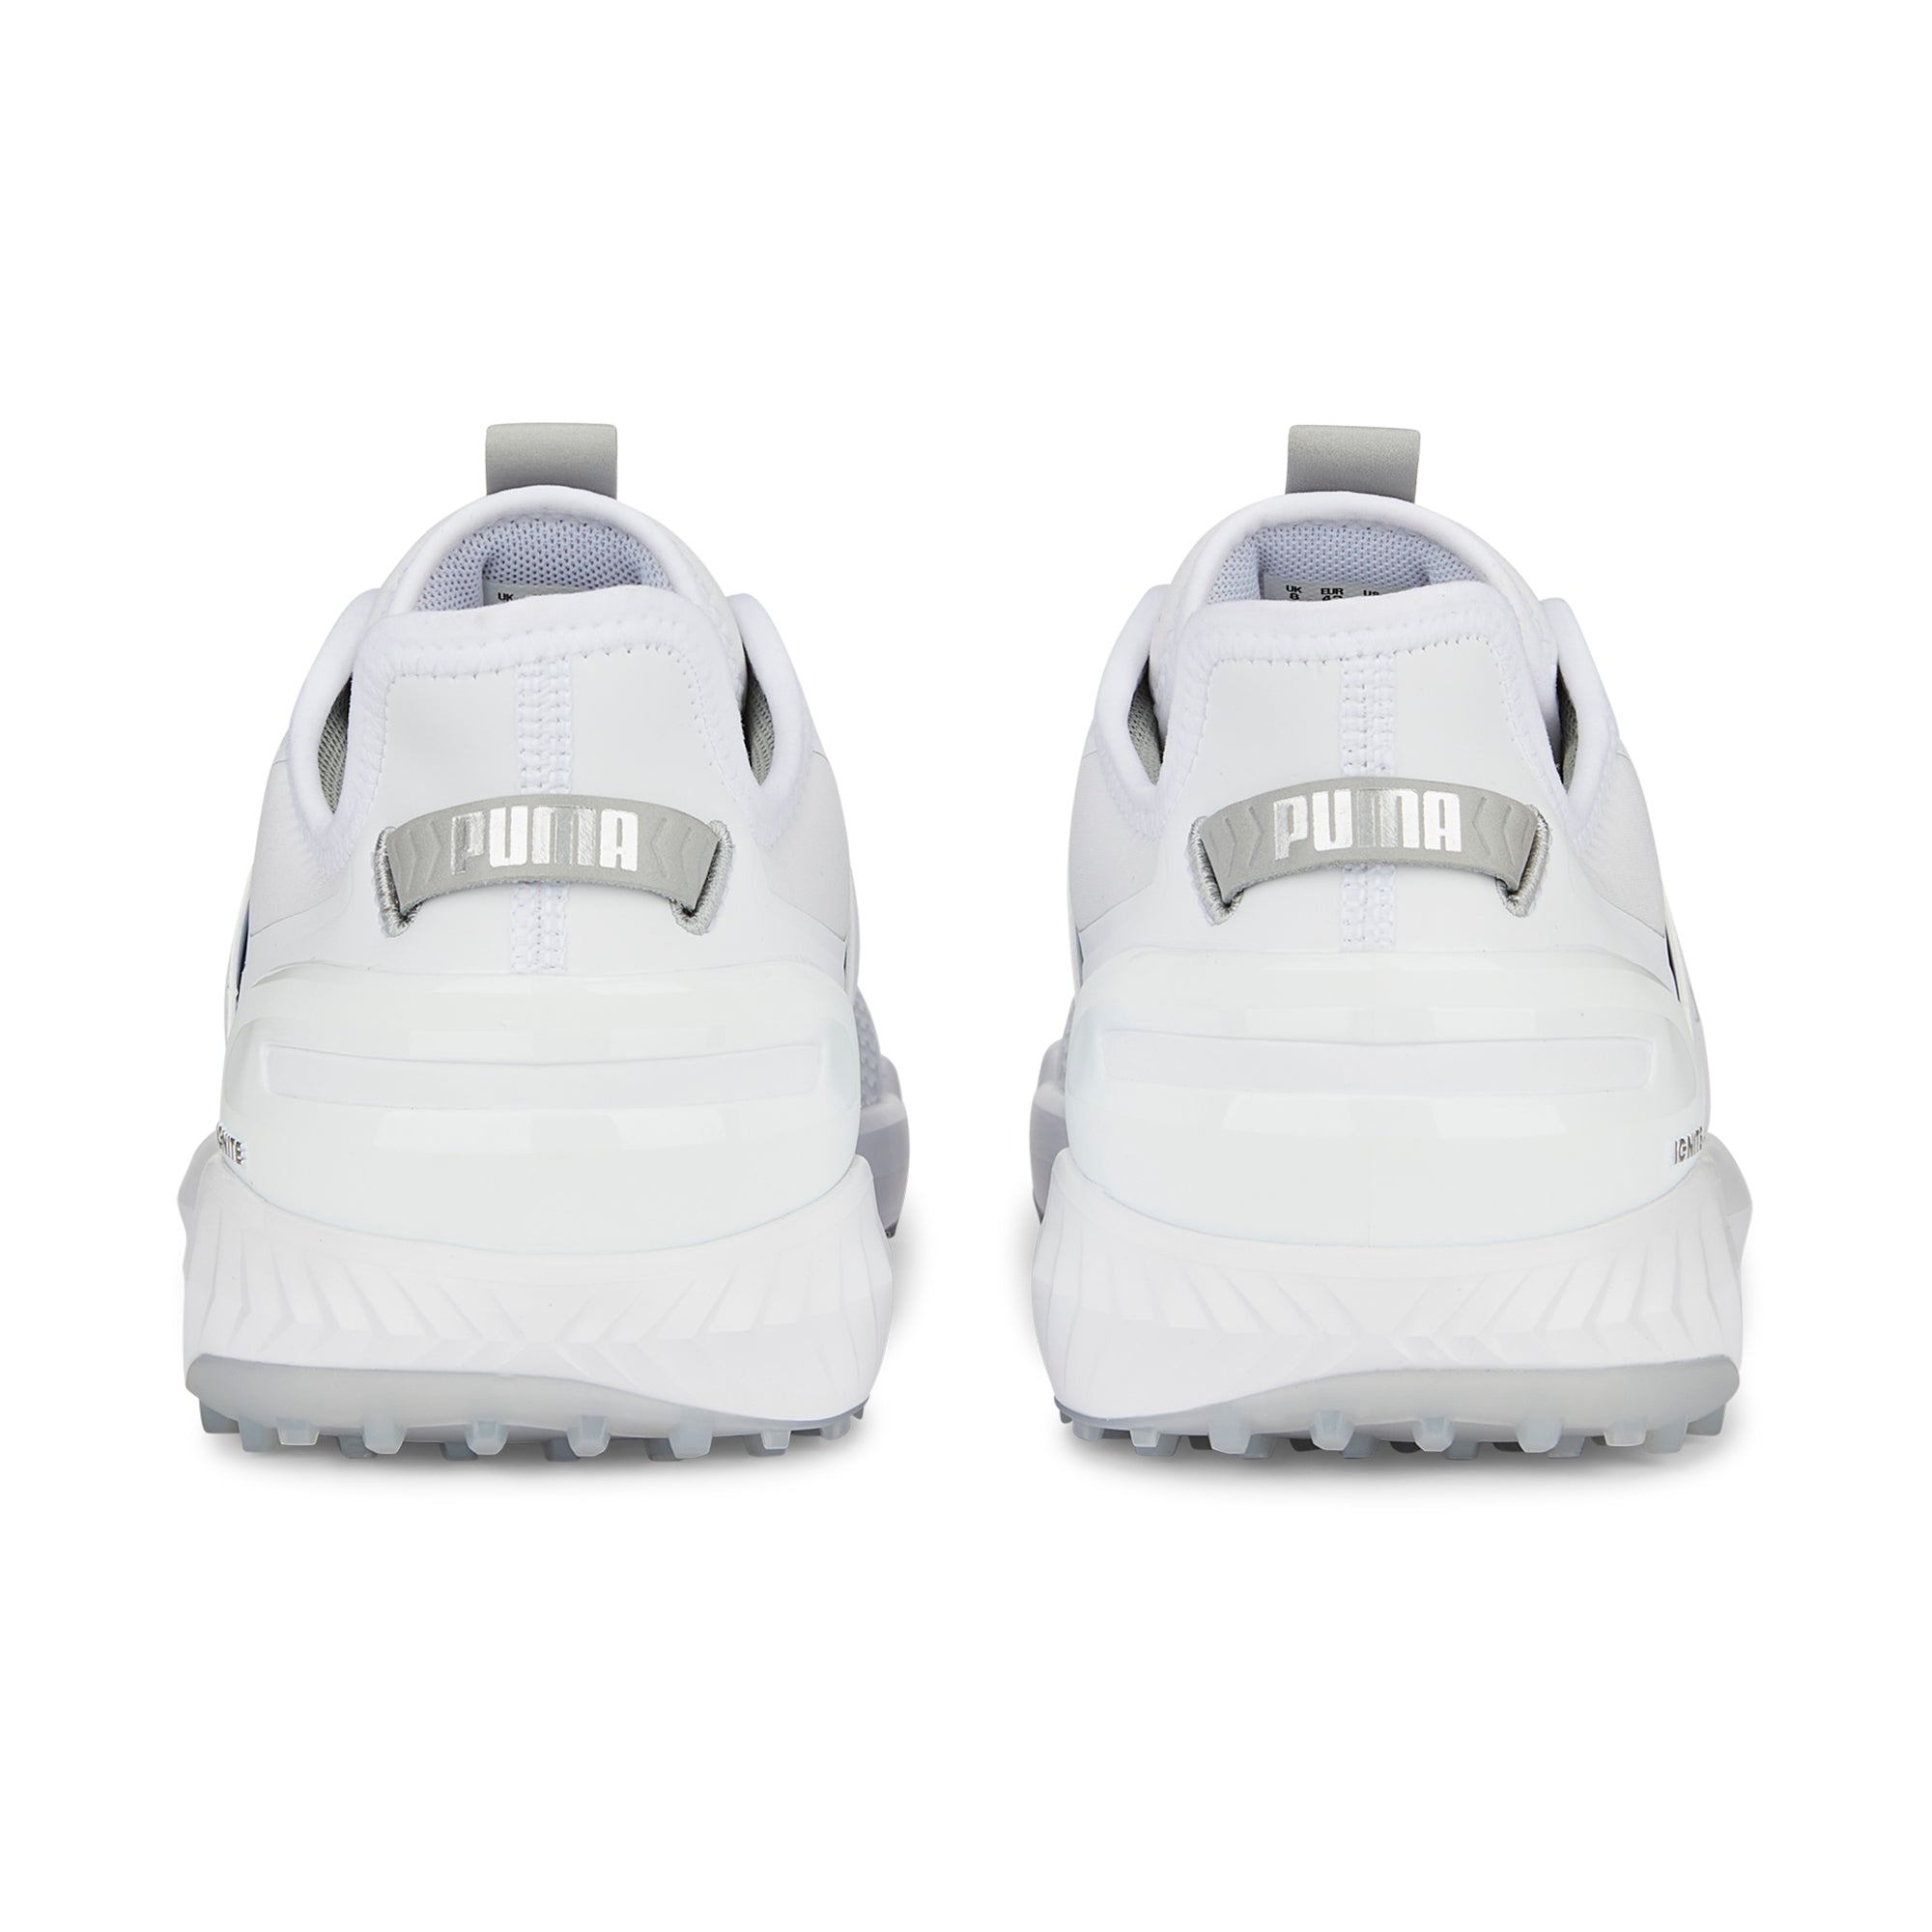 puma-ignite-elevate-golf-shoes-376077-puma-white-puma-silver-01